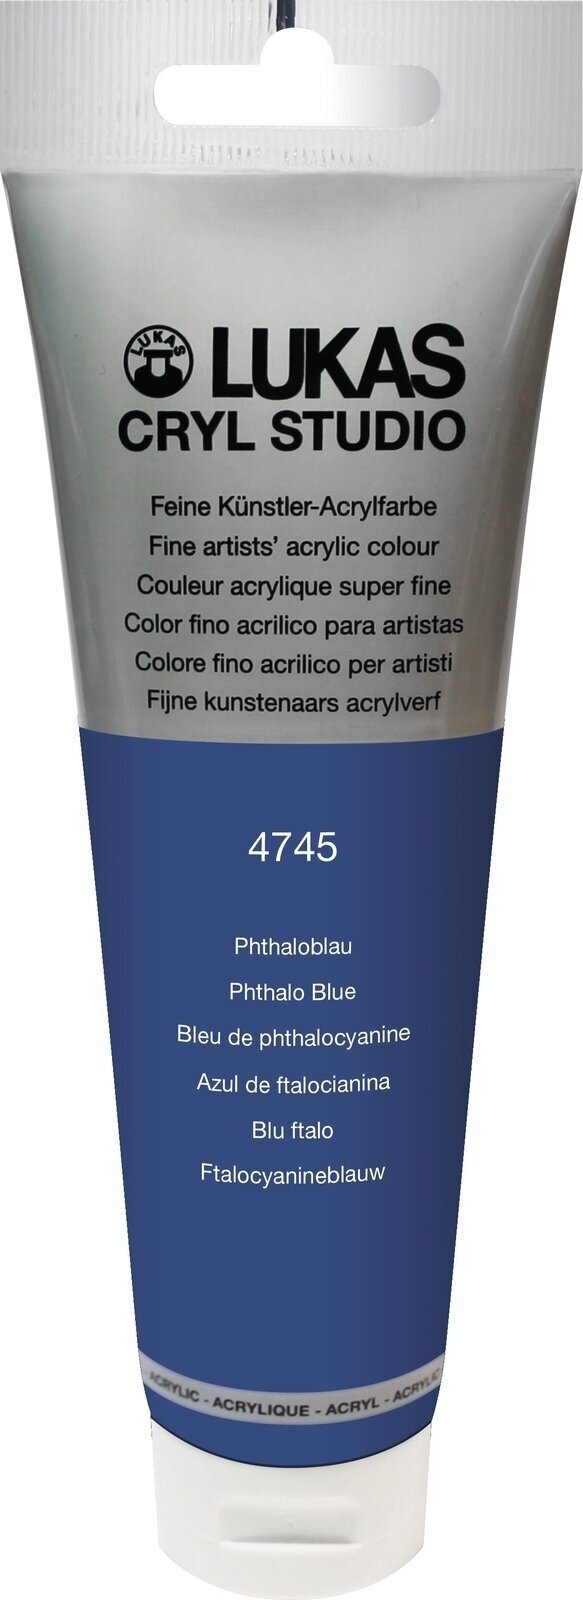 Acrylfarbe Lukas Cryl Studio Acrylic Paint Plastic Tube Acrylfarbe Phthalo Blue 125 ml 1 Stck